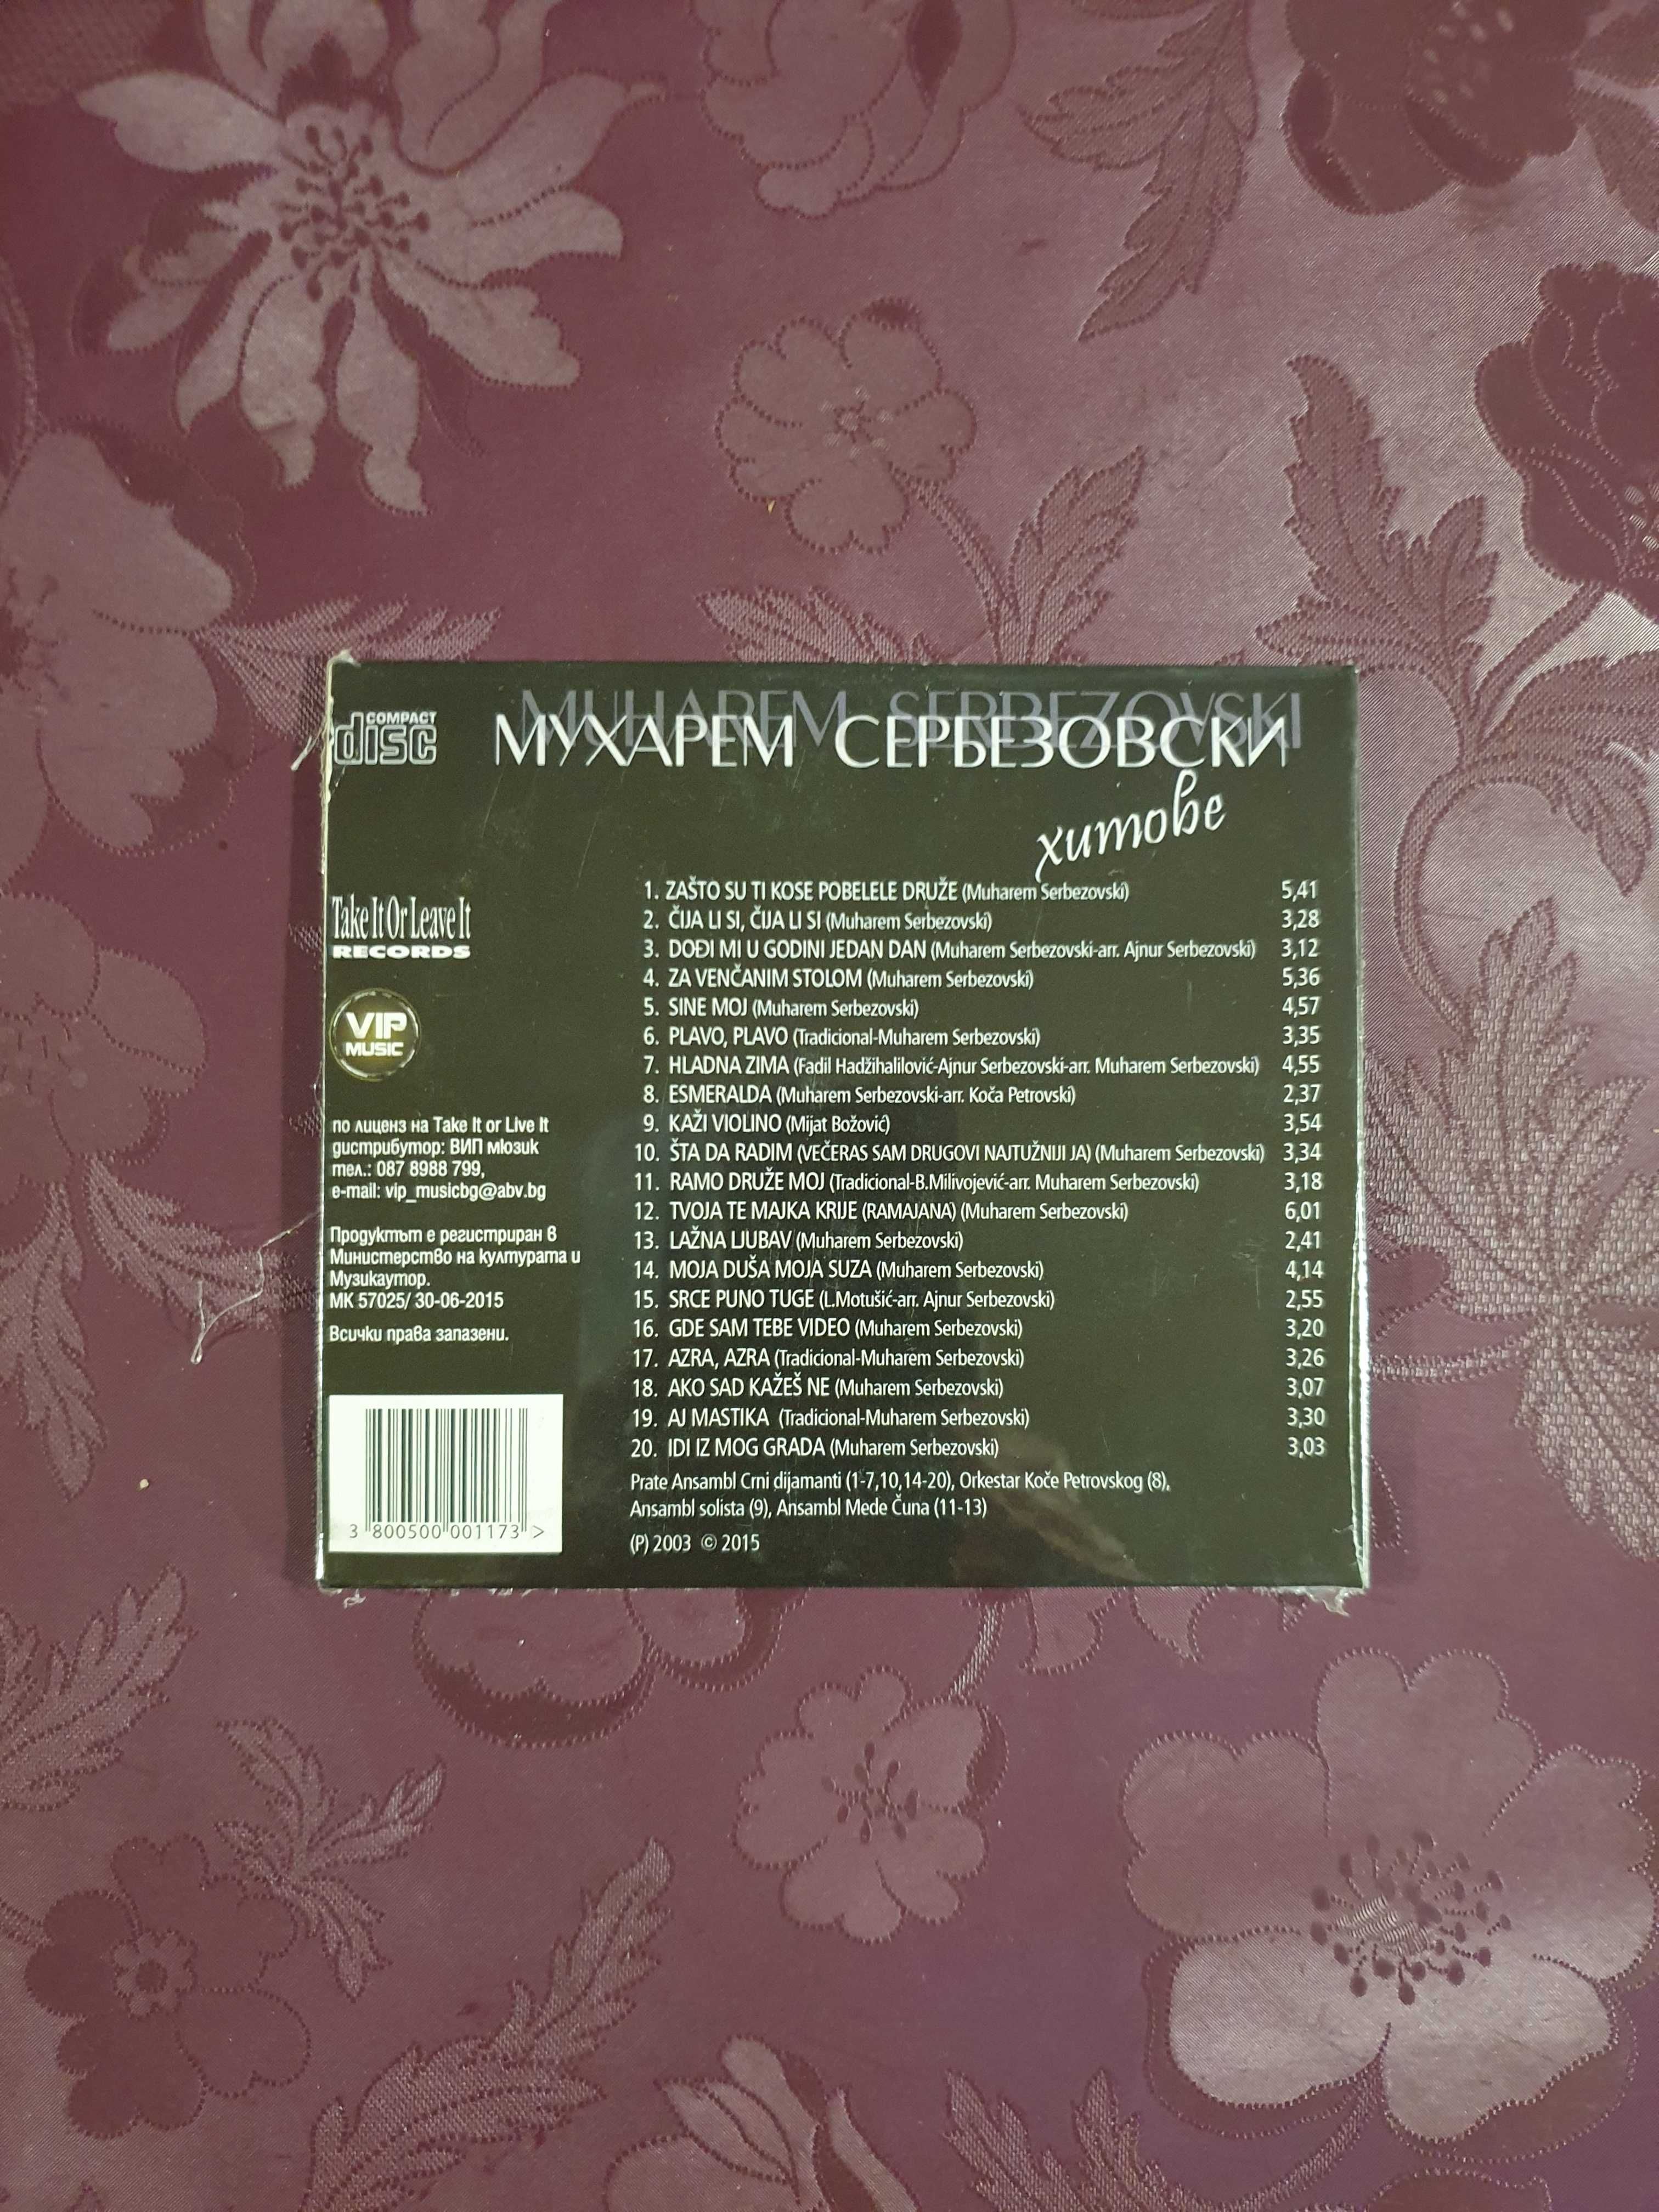 НОВИ CD - Хитови сръбски изпълнители